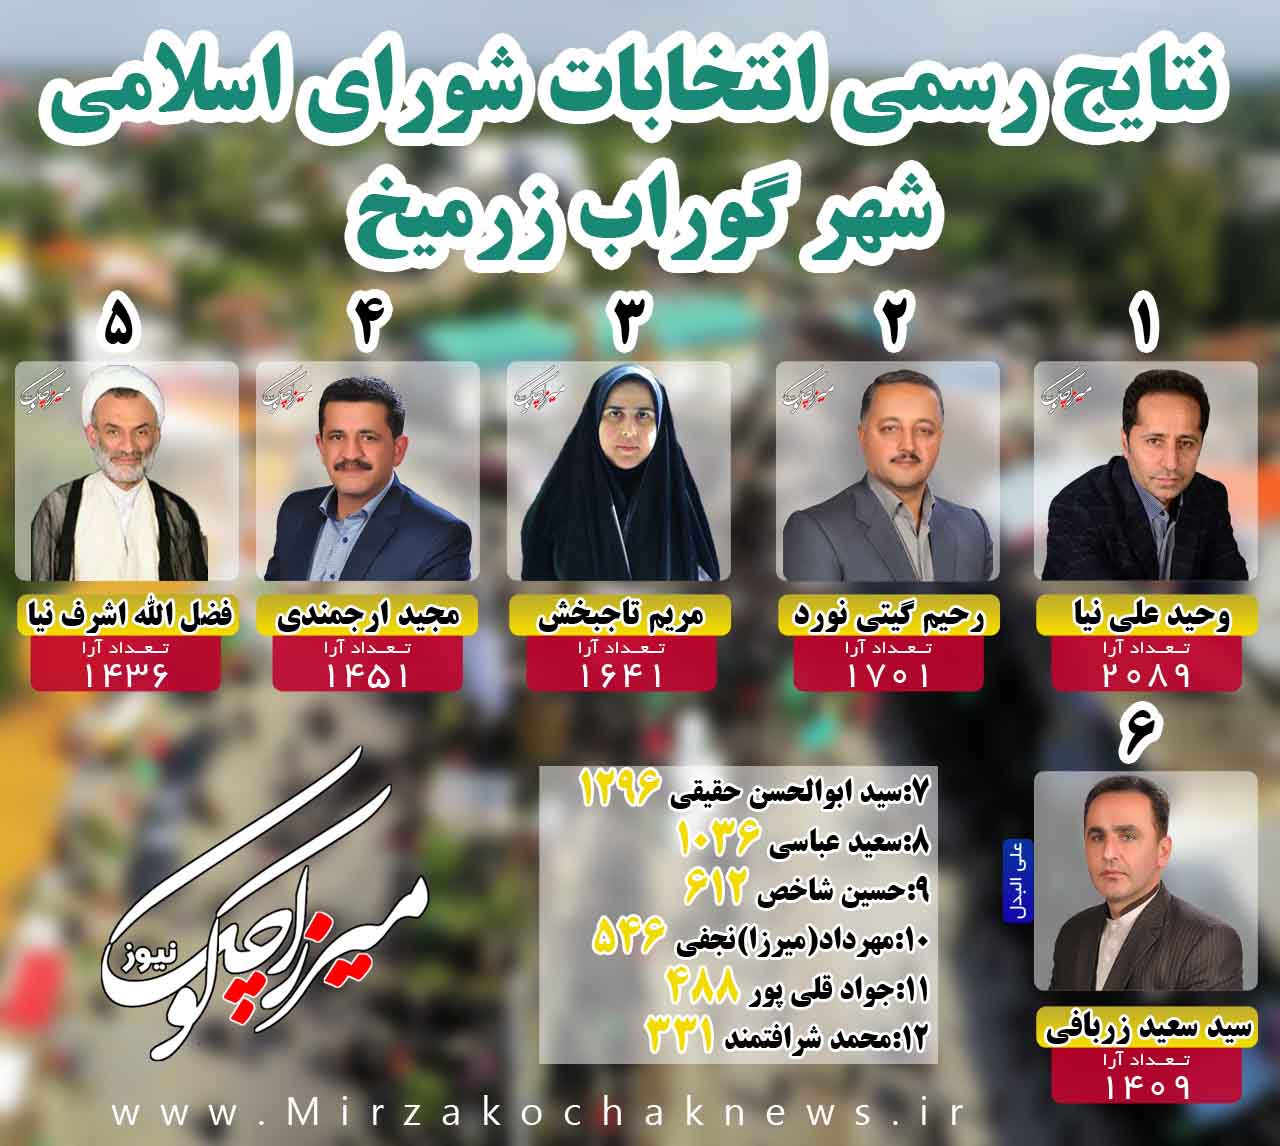 اسامی منتخبان پنجمین دوره انتخابات شوراهای اسلامی شهر گوراب زرمیخ